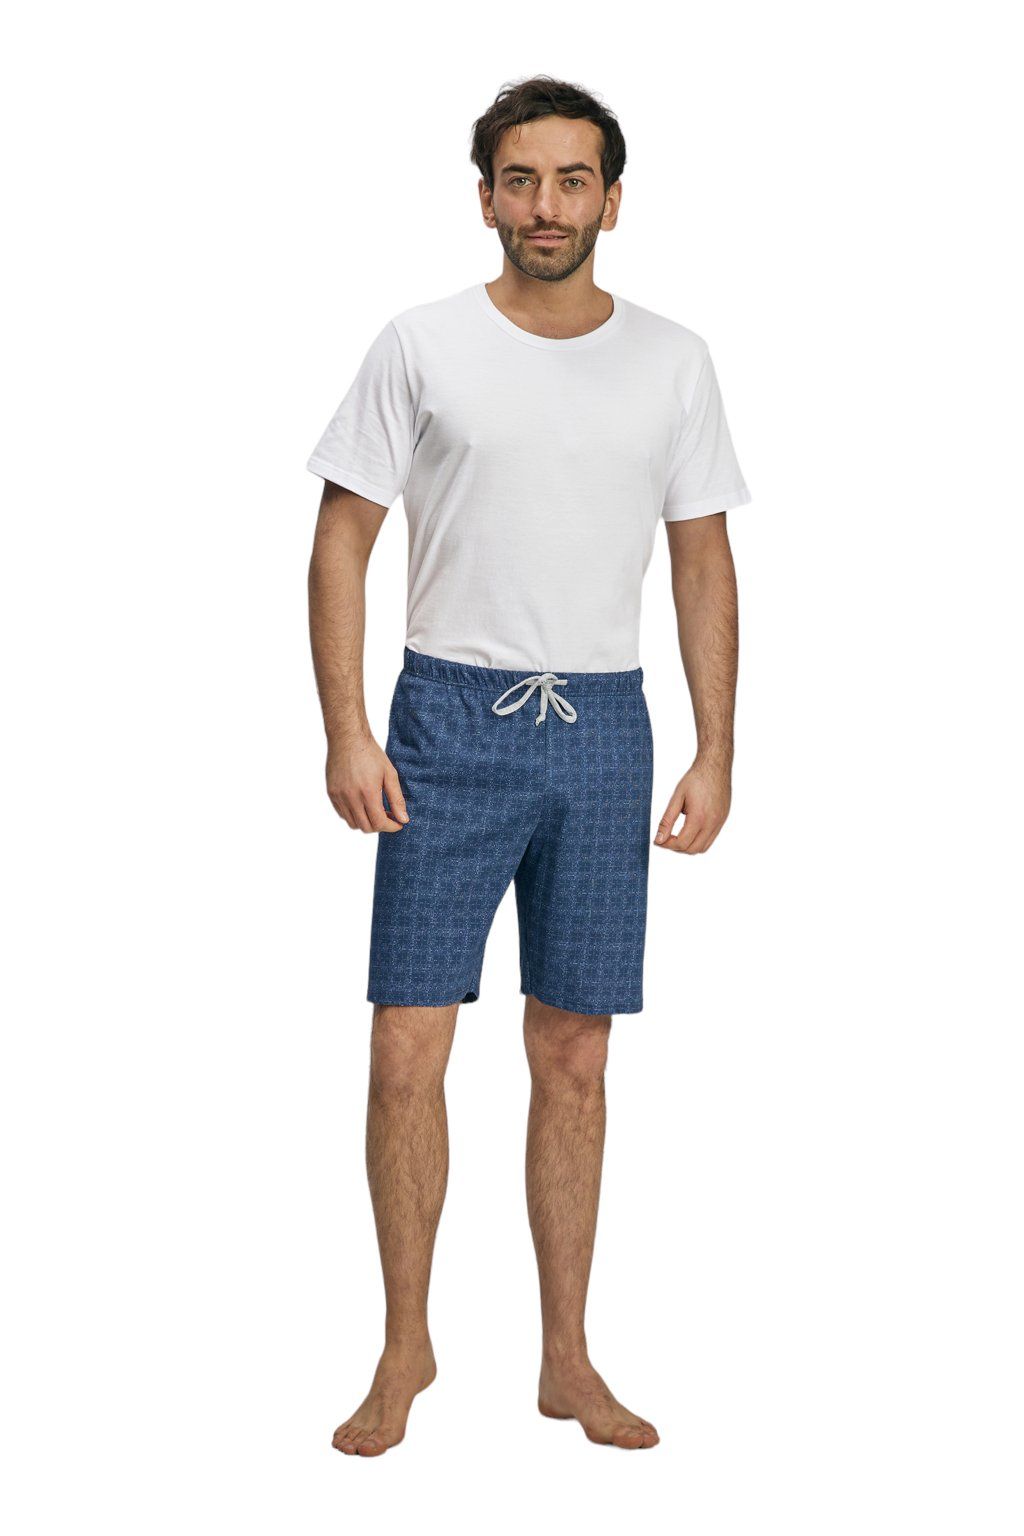 Pánské pyžamové kalhoty s krátkými nohavicemi, 204123 466, modrá - Velikost M Wadima